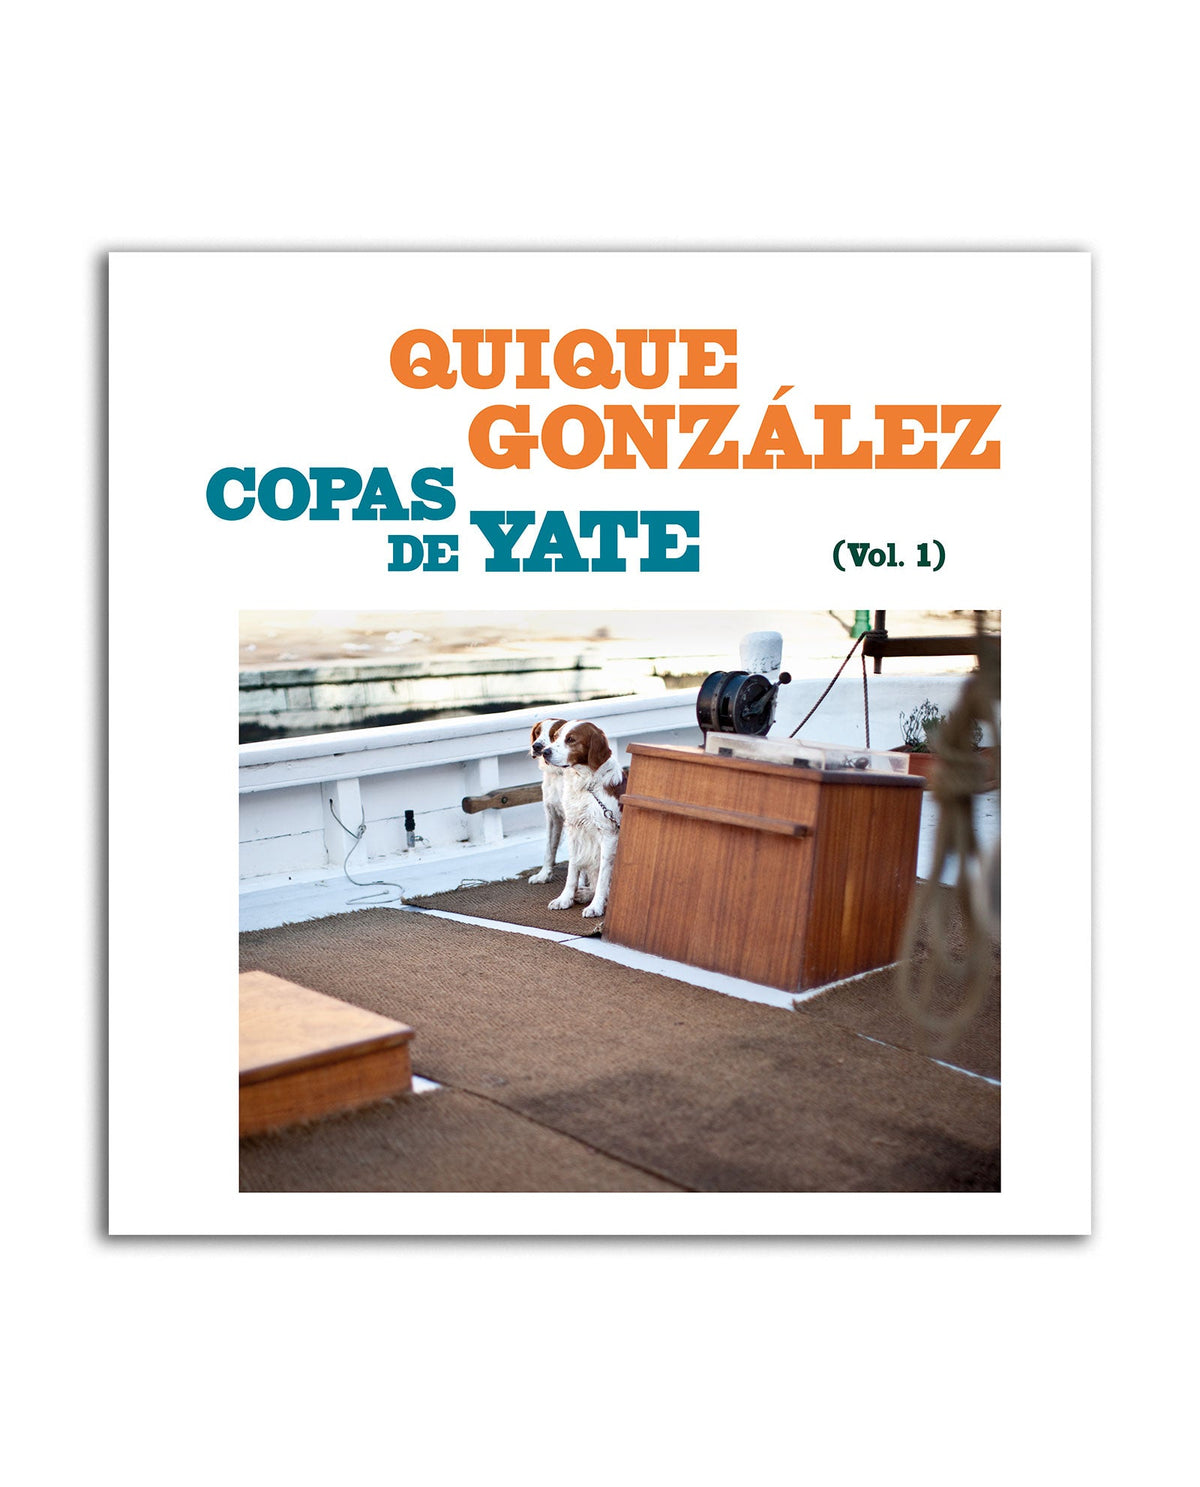 Quique González - LP Vinilo + CD FIRMADO "Copas de Yate (Vol. I)" - D2fy · Rocktud - Quique González